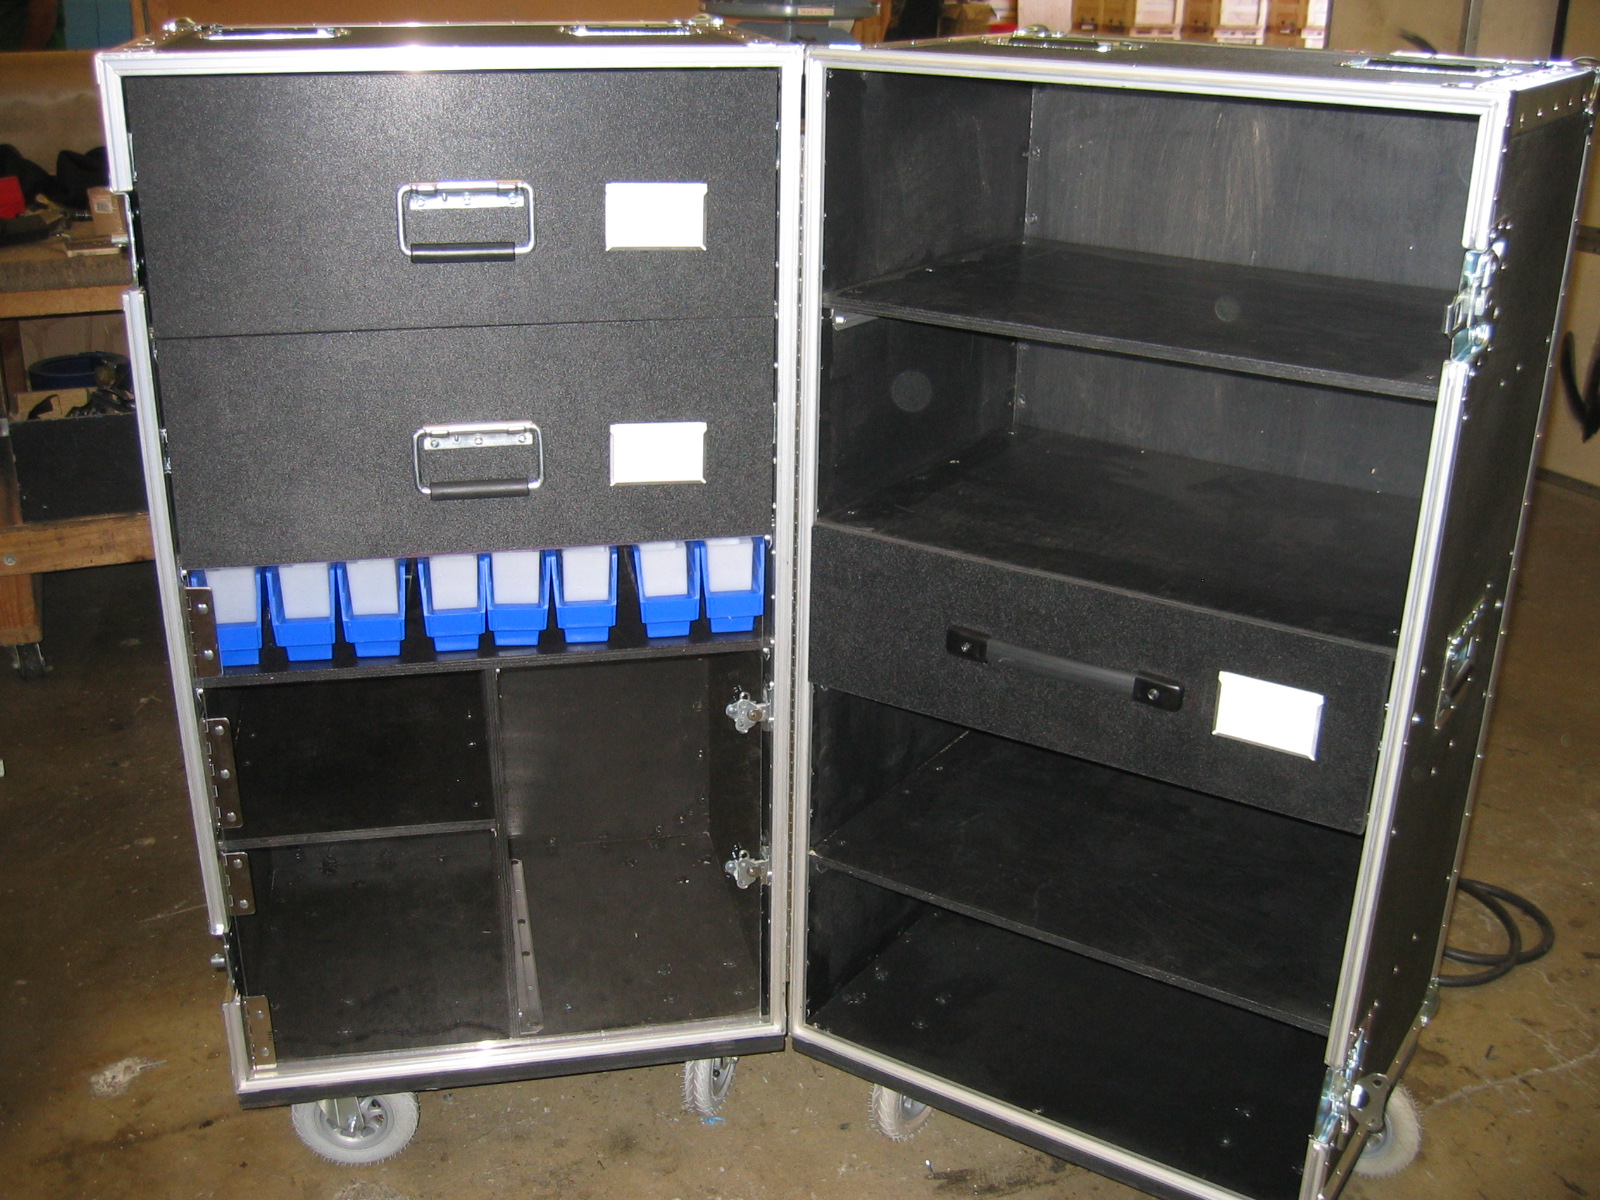 ata-case-with-shelves